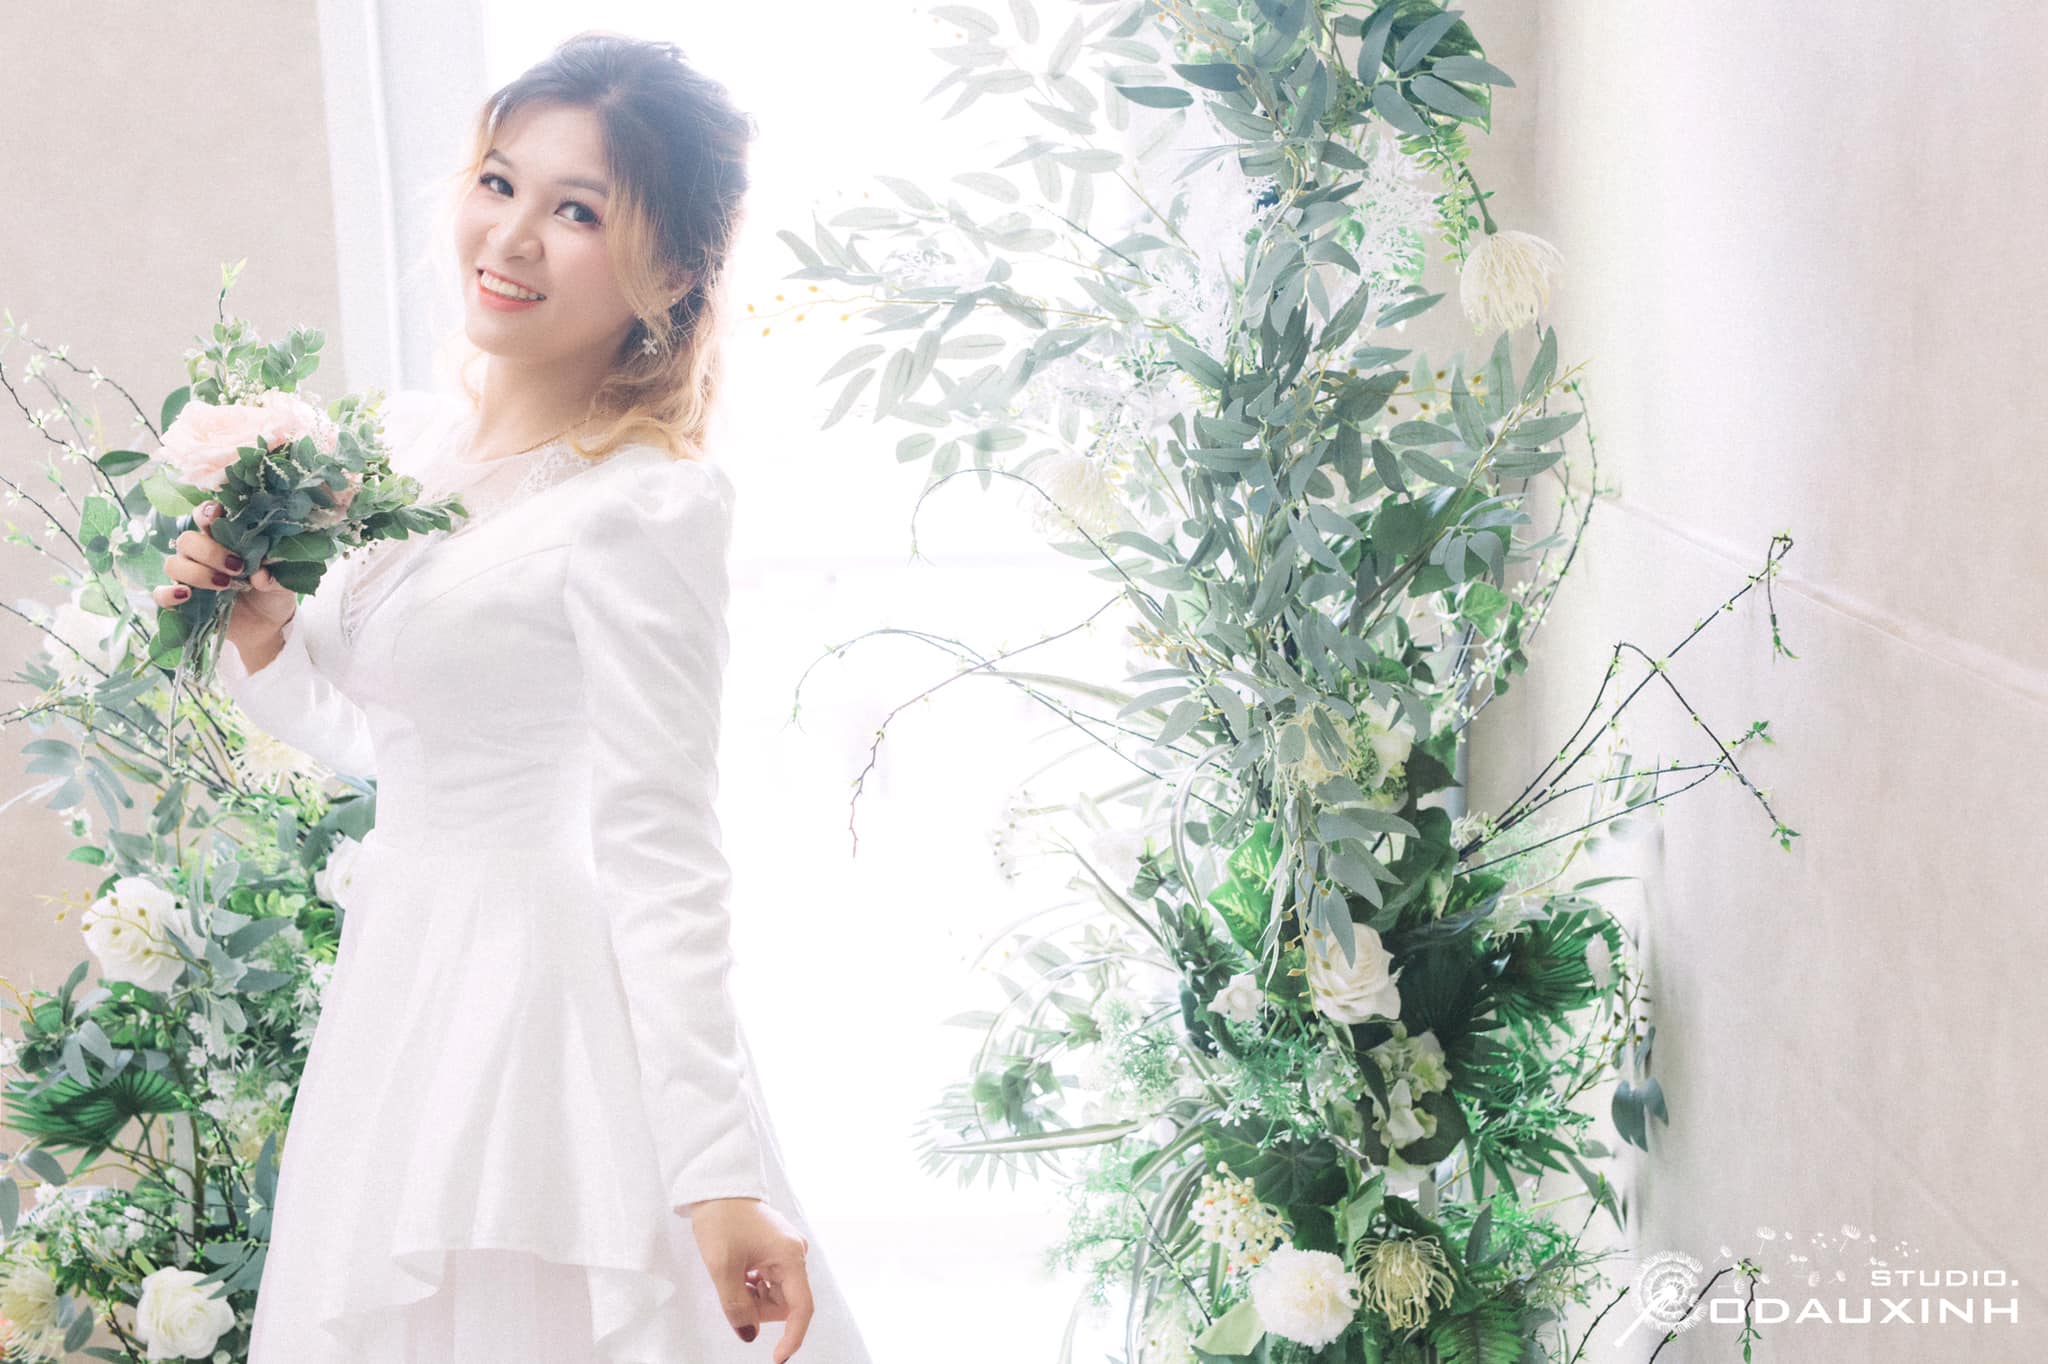 Top 7 tiệm trang điểm cô dâu đẹp nhất tại Cam Ranh, Khánh Hòa -  Cam Thanh Thanh make up (Studio cô dâu xinh NT)